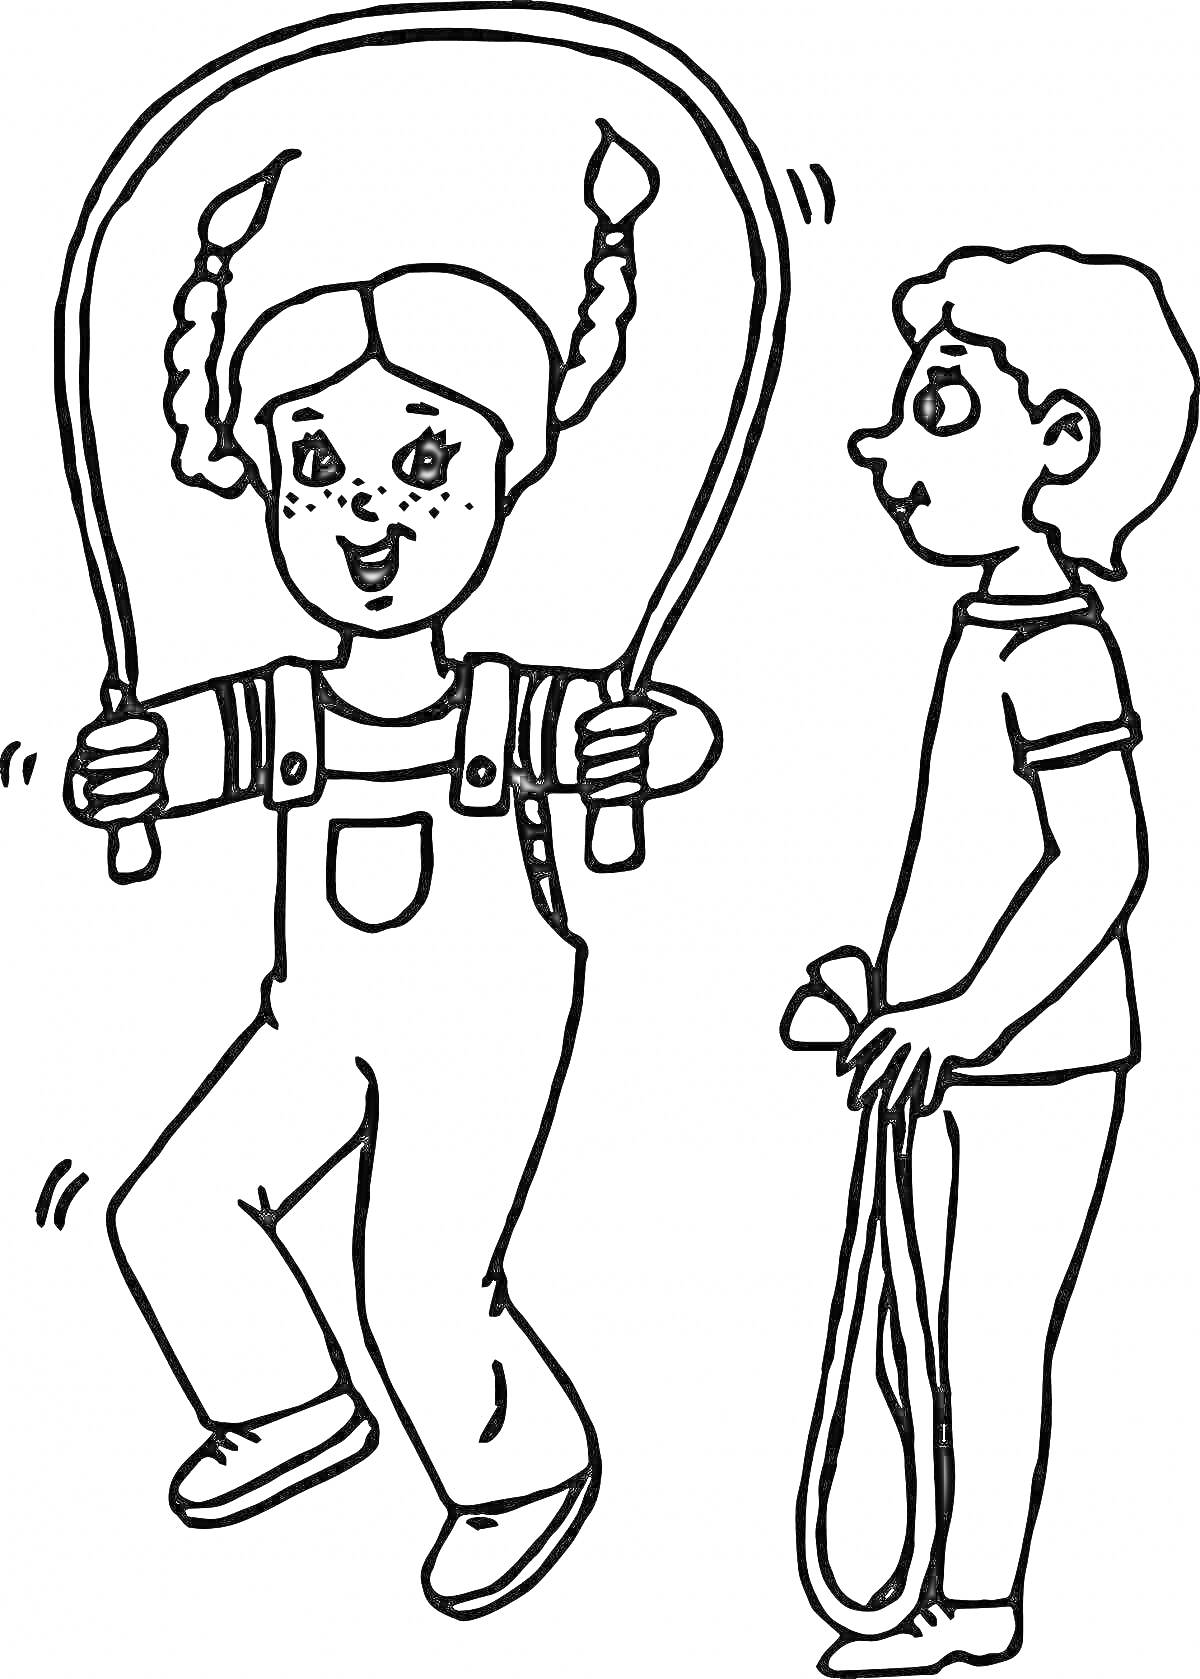 Раскраска Дети с веревочкой - девочка с косичками прыгает через веревочку, мальчик держит веревочку в руке